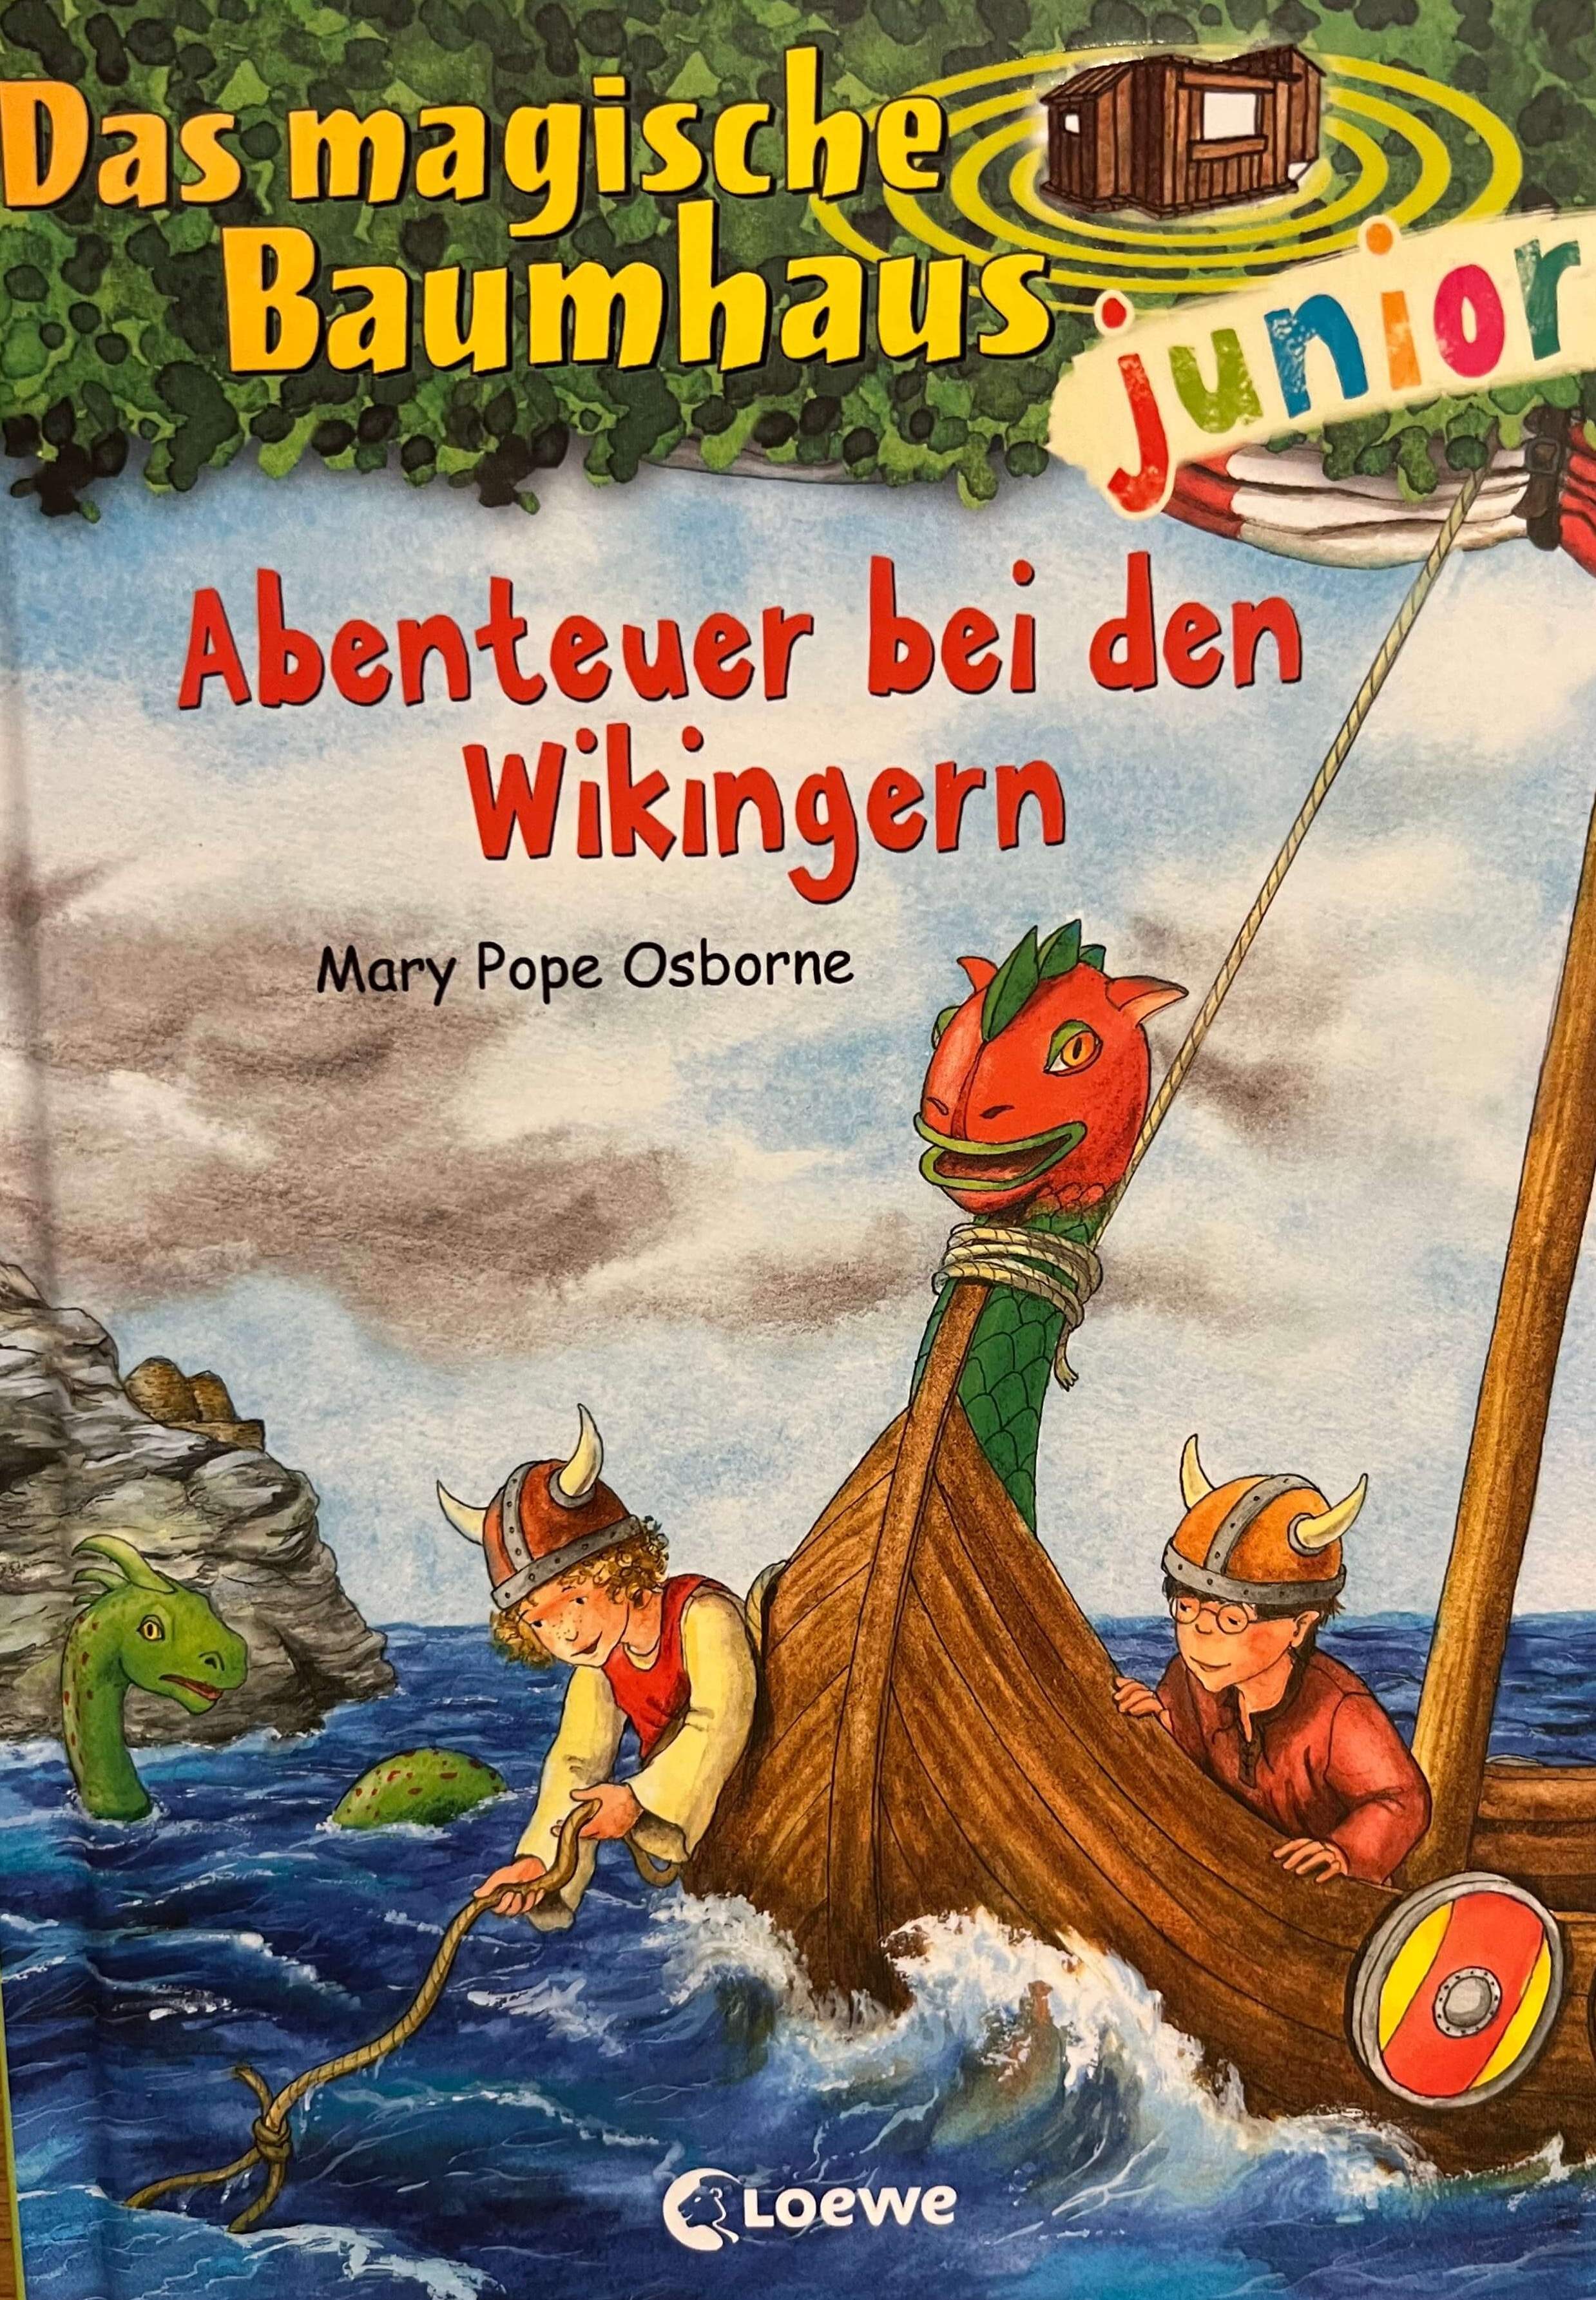 Das magische Baumhaus junior - Abenteuer bei den Wikingern (Bd 15)